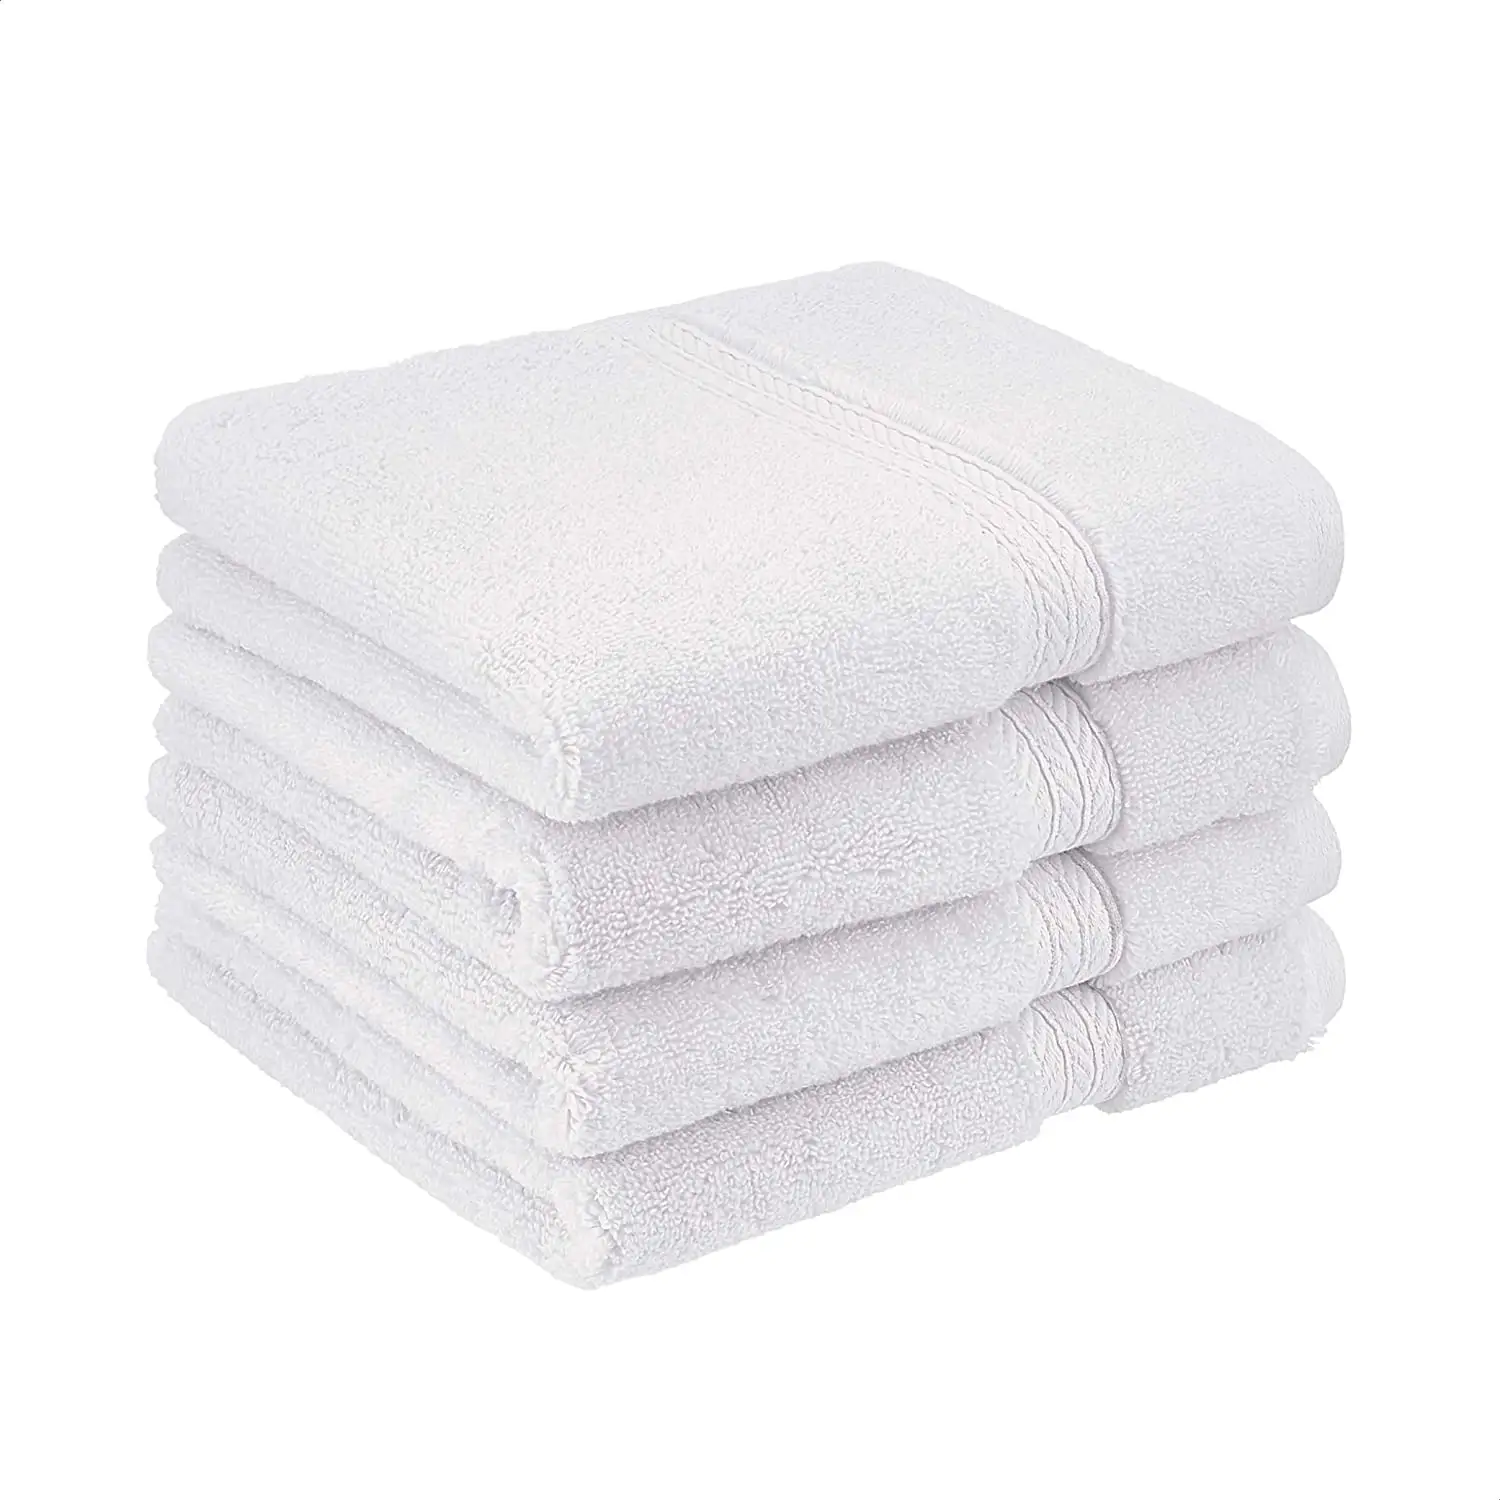 Gros 5 étoiles hôtel qualité vie visage serviettes 100 coton serviette blanche